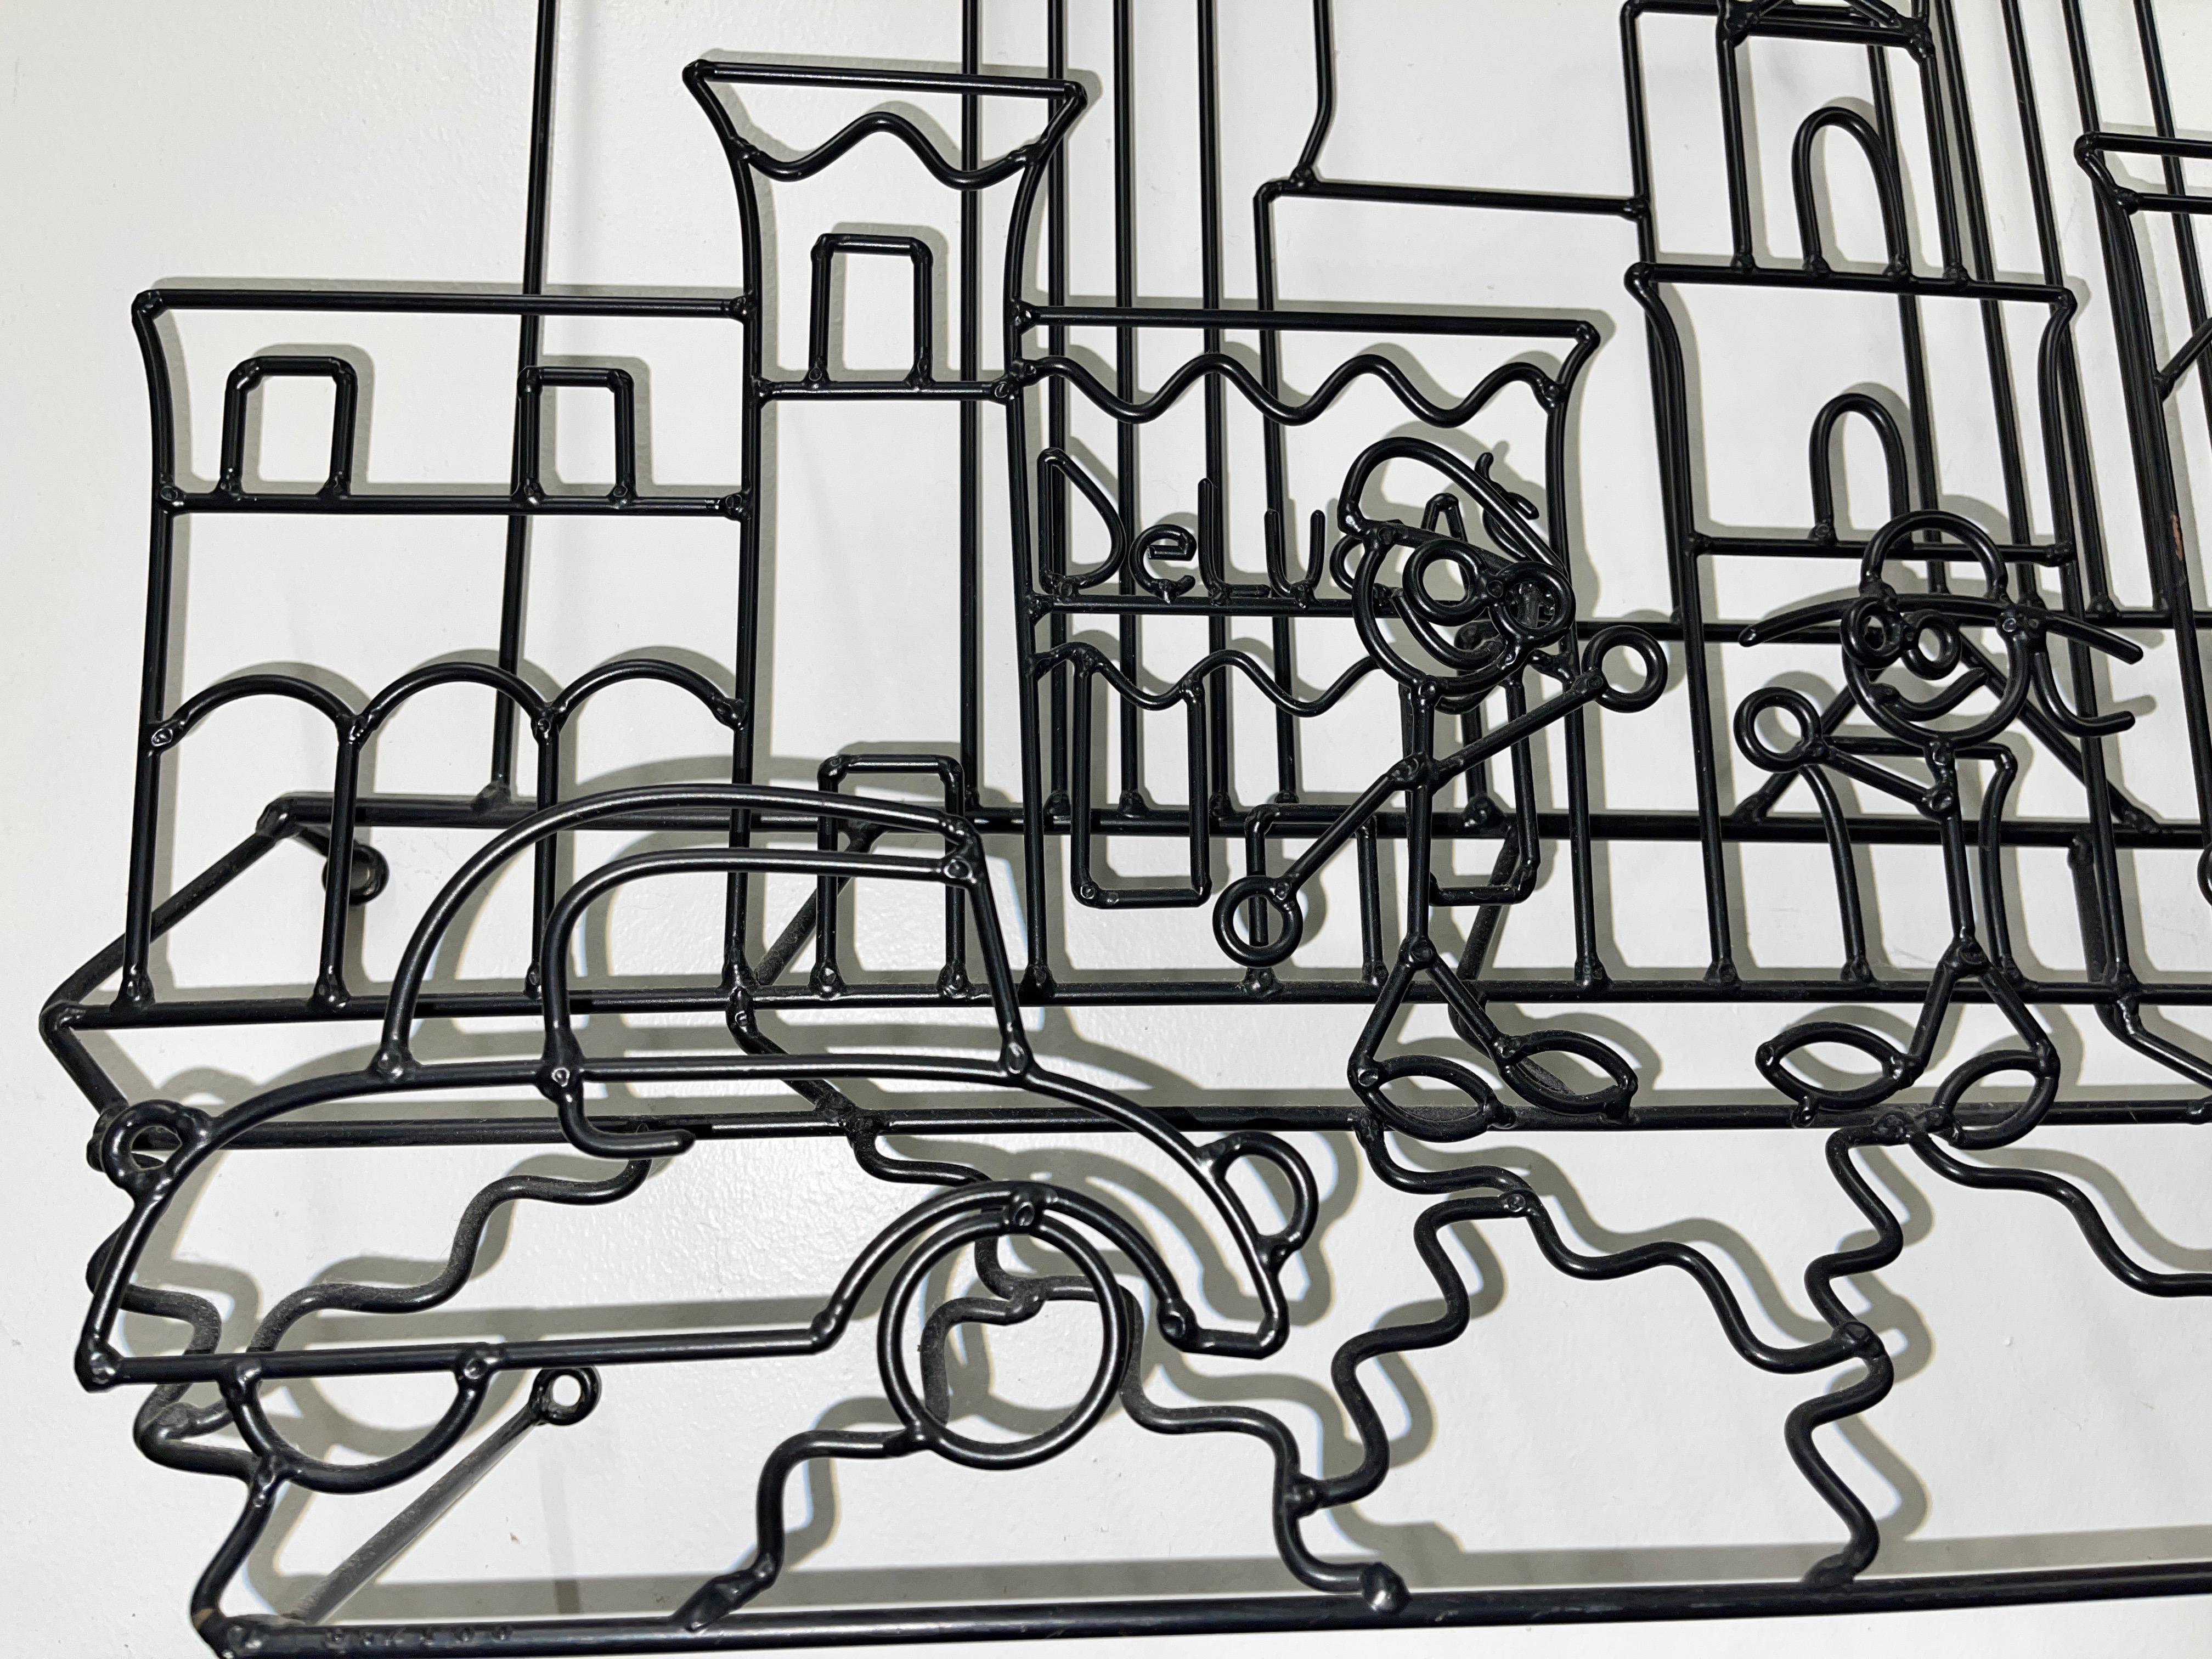 Steel Wire Art Wall Mounted Sculpture of Boston Skyline by Barrett DeBusk For Sale